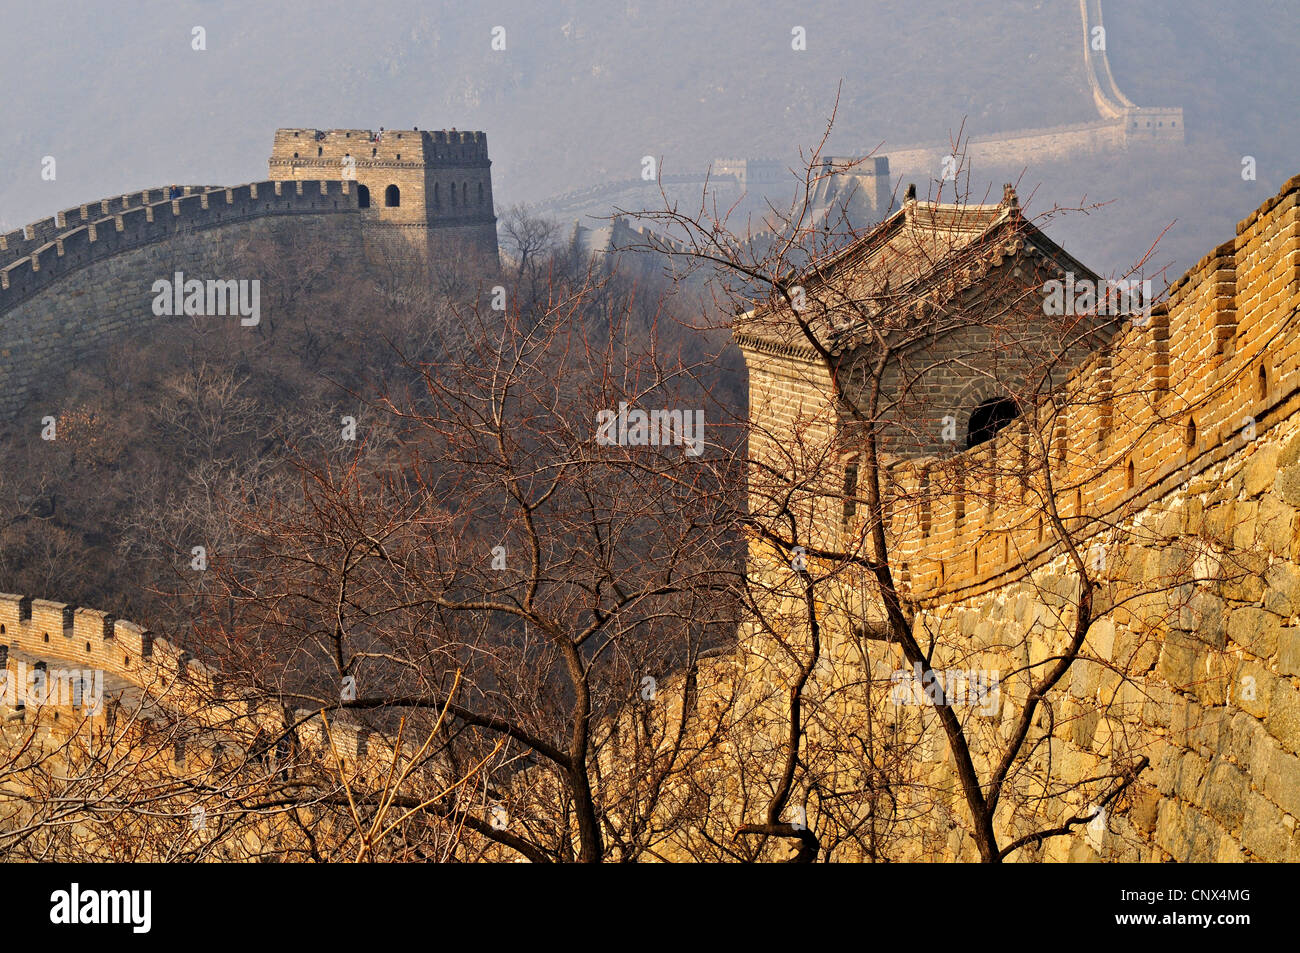 Die Great Wall Of China mit mehreren Wachtürmen sichtbar, bei Mutianyu rund um 85kms von Peking, China. Stockfoto